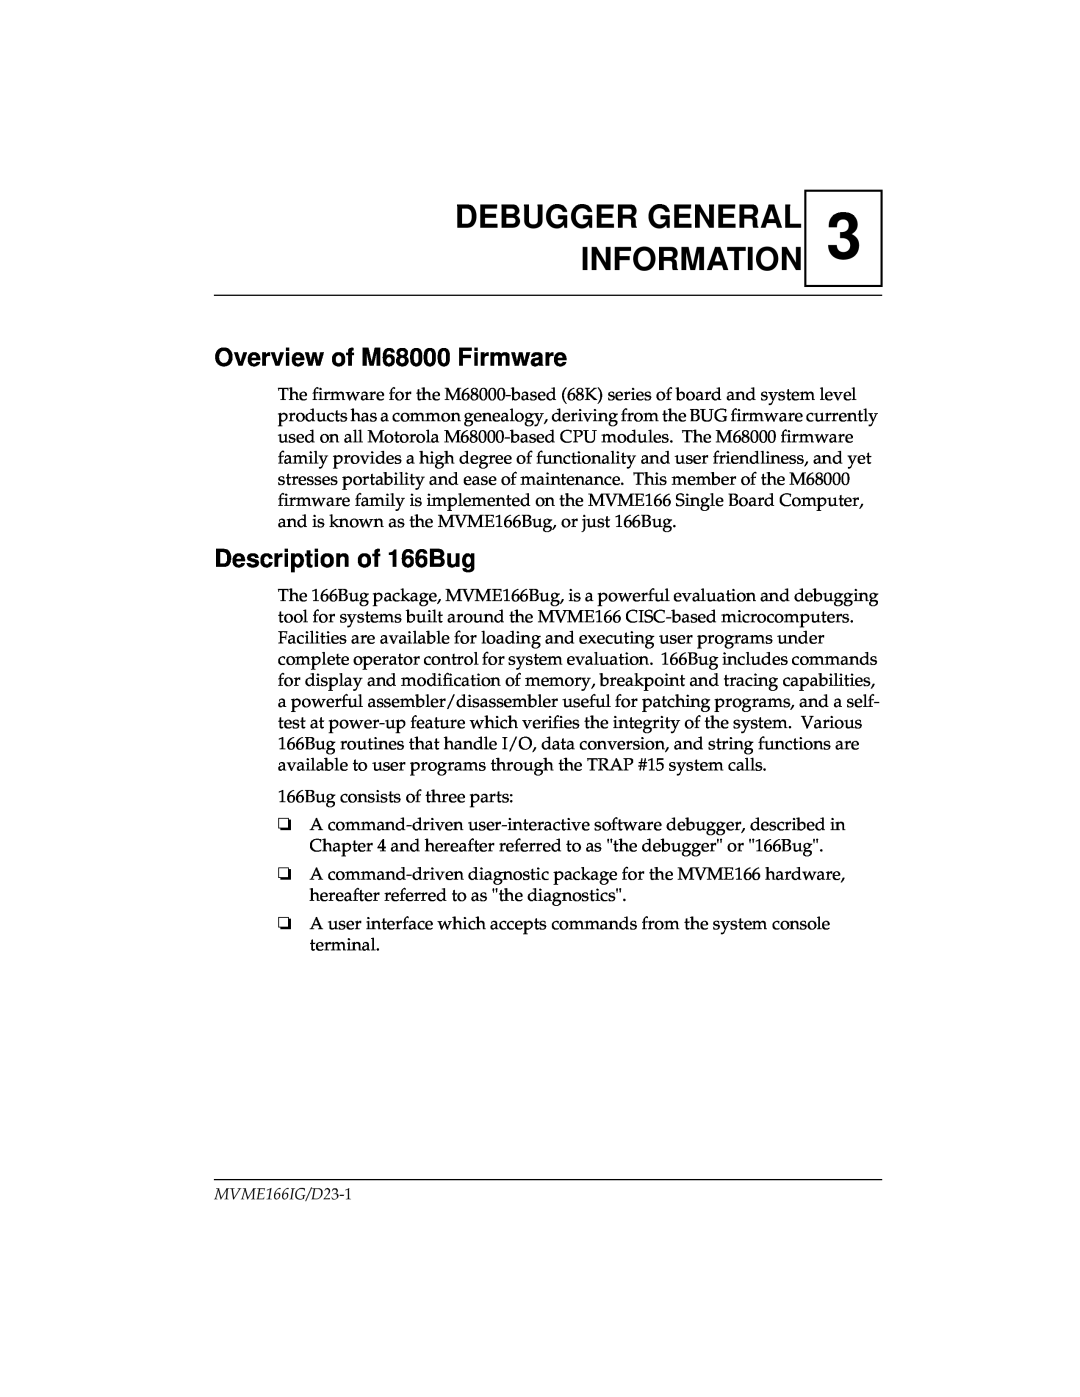 Motorola MVME166IG/D2, MVME166D2 manual Debugger General Information, Overview of M68000 Firmware, Description of 166Bug 